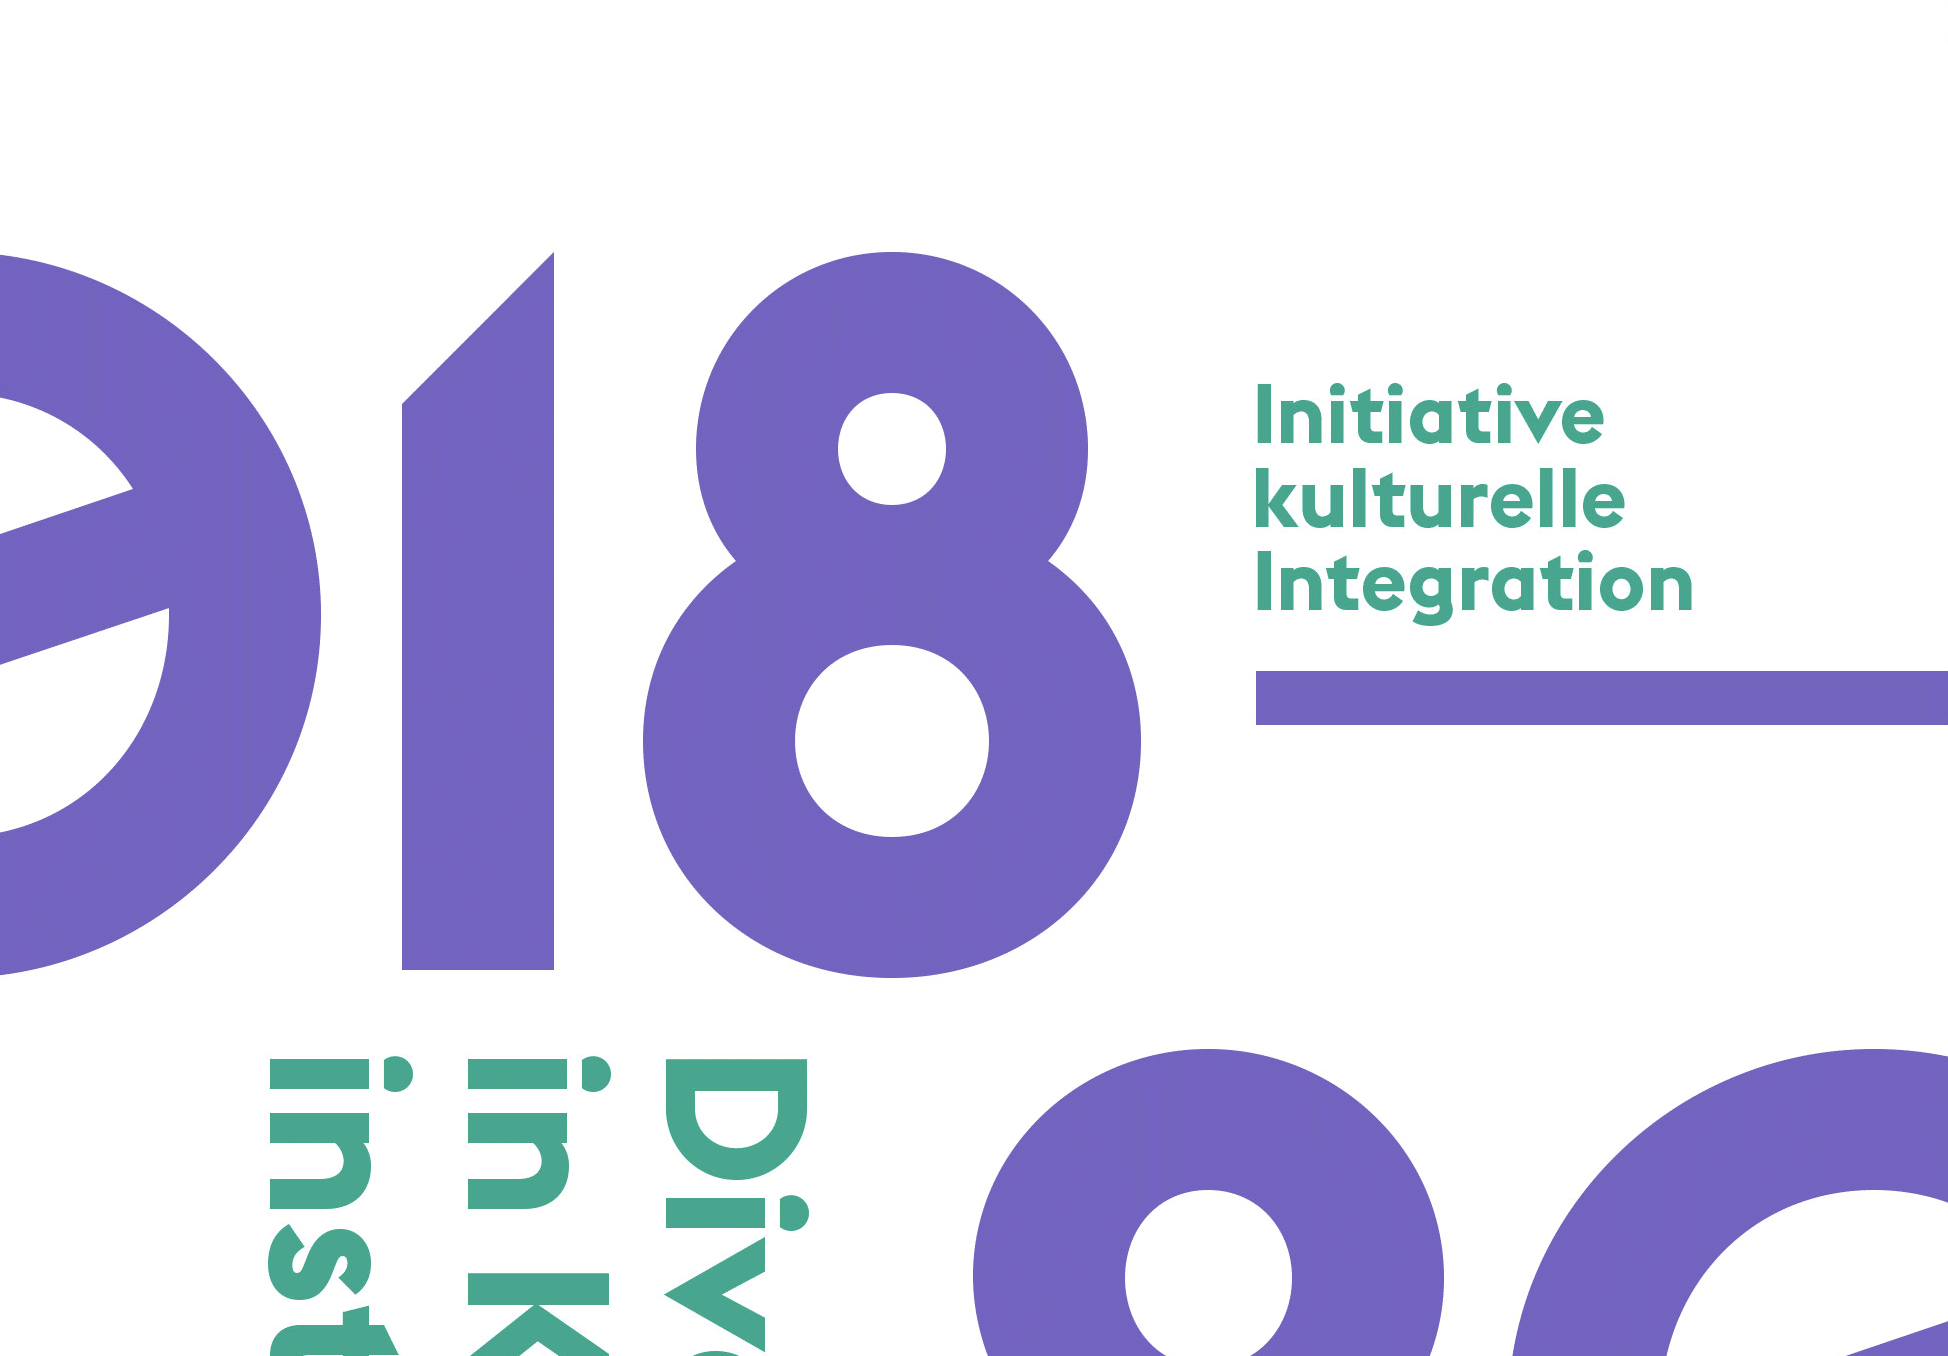 den die Initiative kulturelle Integration Ende Oktober 2021 vorstellte. Foto: www.kulturrat.de